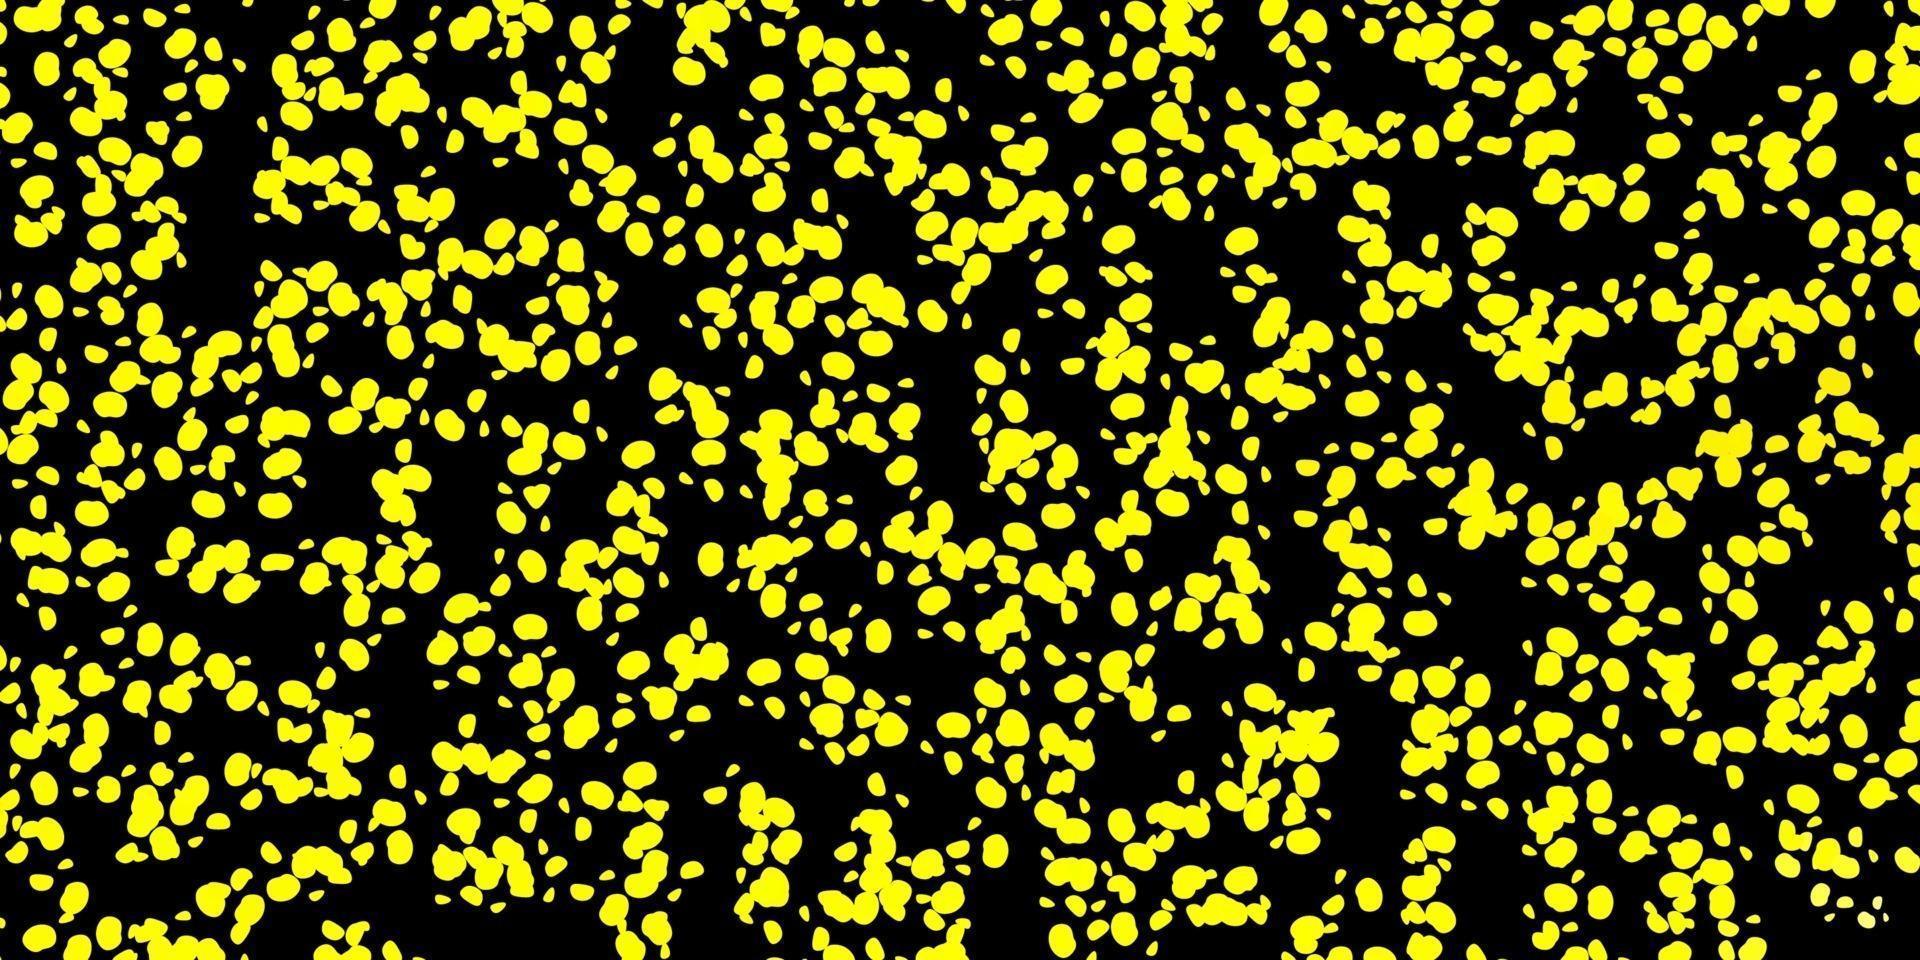 sfondo vettoriale giallo scuro con forme casuali.